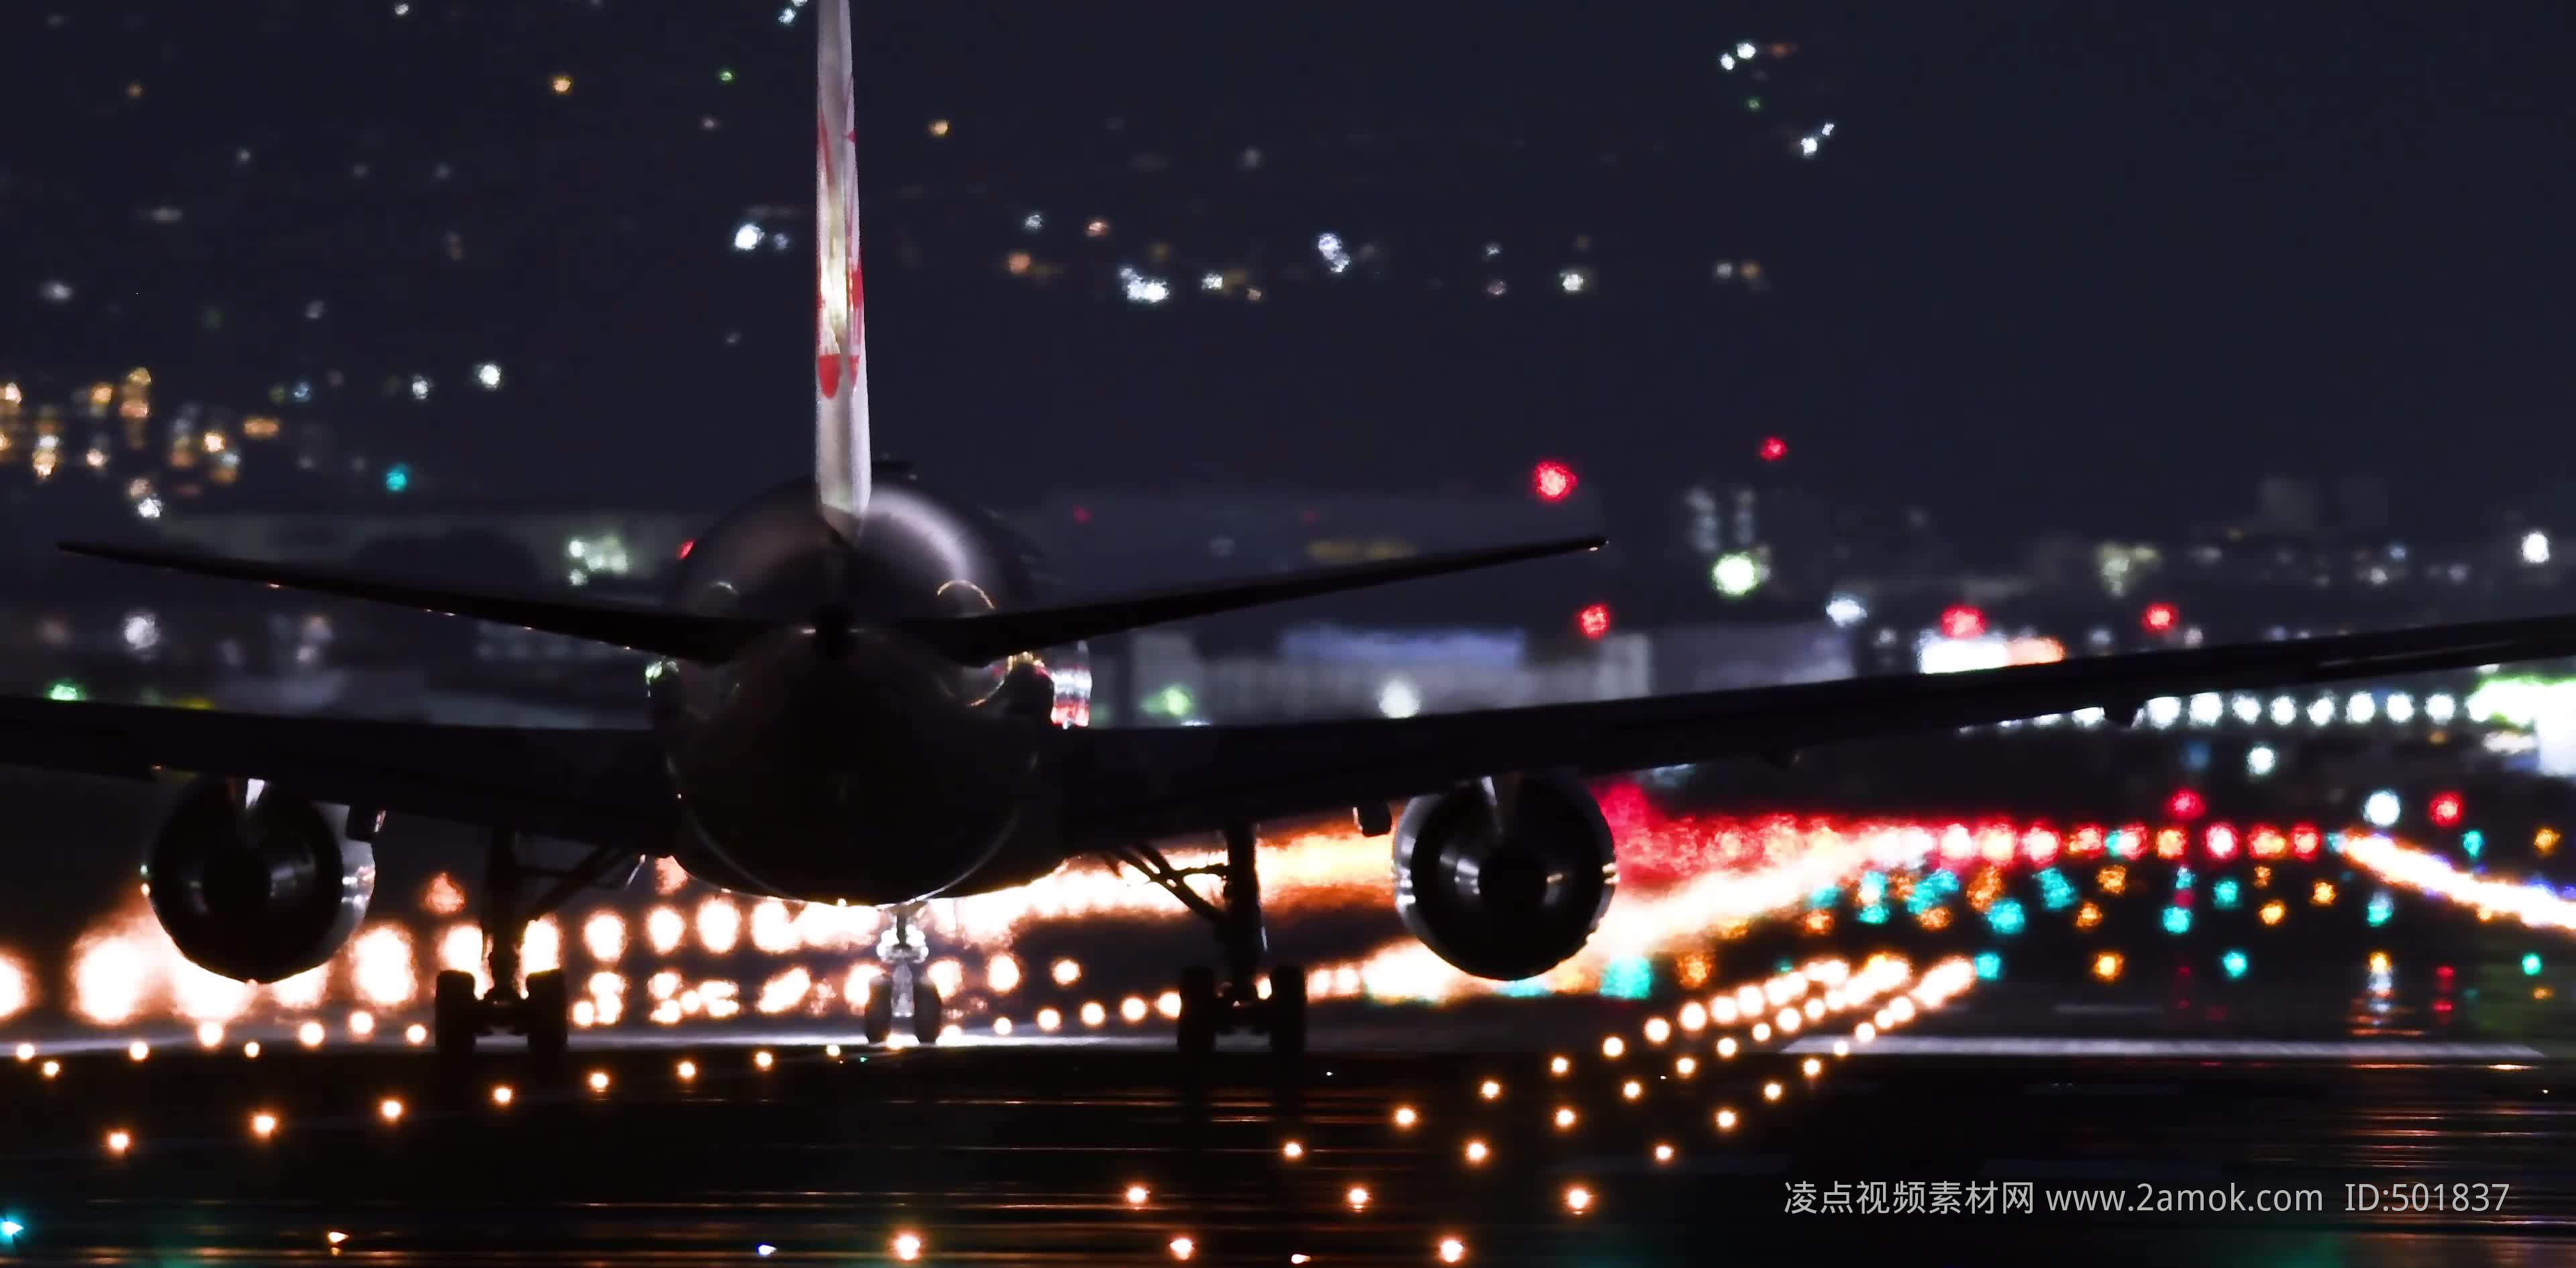 4k四川航空飞机降落过程视频素材,其它视频素材下载,高清3840X1640视频素材下载,凌点视频素材网,编号:148849